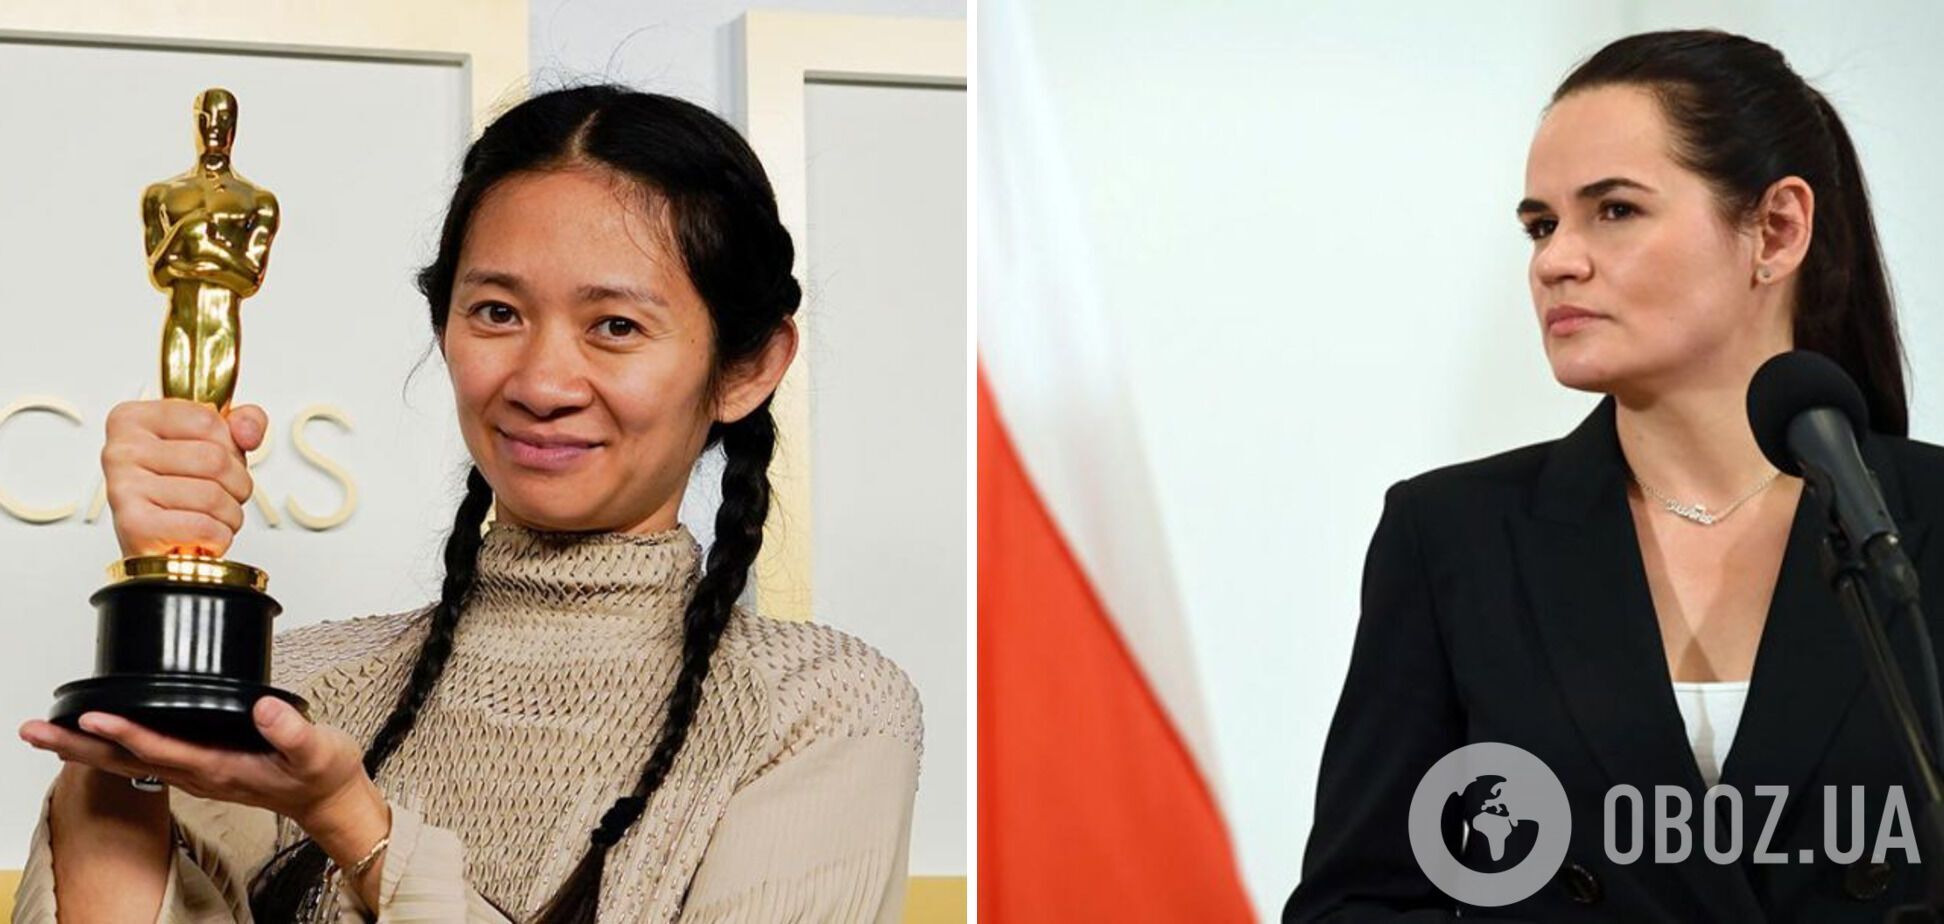 Хлоя Чжао и Светлана Цихановская стали одними из самых влиятельных женщин мира